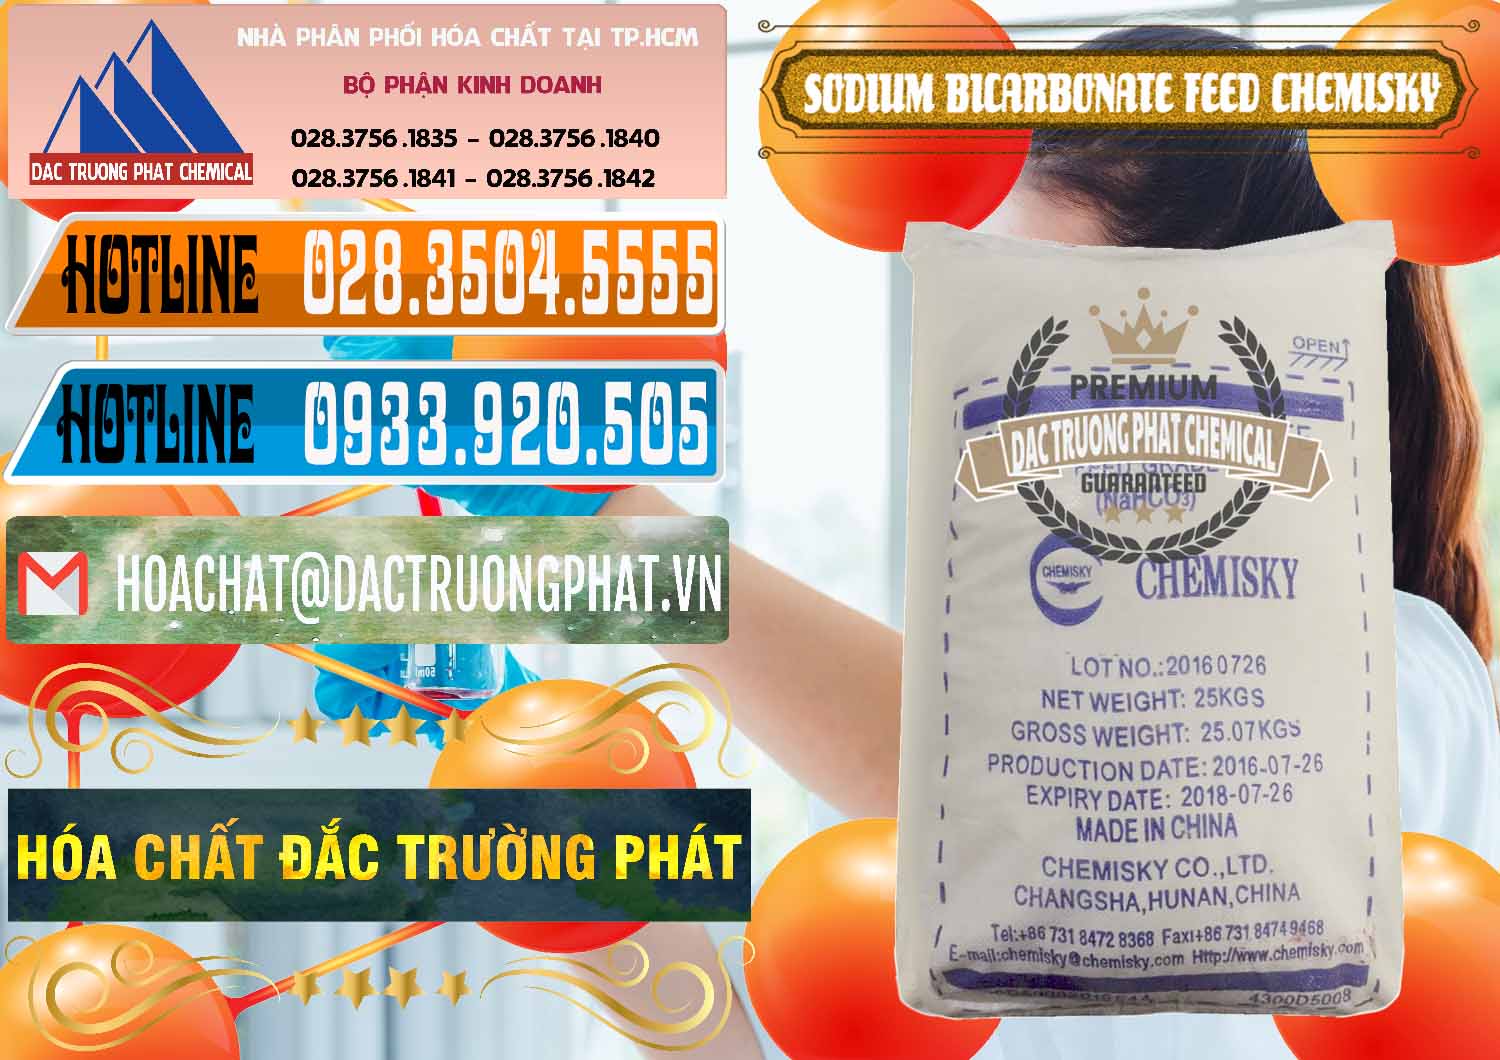 Cty bán ( cung ứng ) Sodium Bicarbonate – Bicar NaHCO3 Feed Grade Chemisky Trung Quốc China - 0264 - Chuyên kinh doanh _ cung cấp hóa chất tại TP.HCM - stmp.net